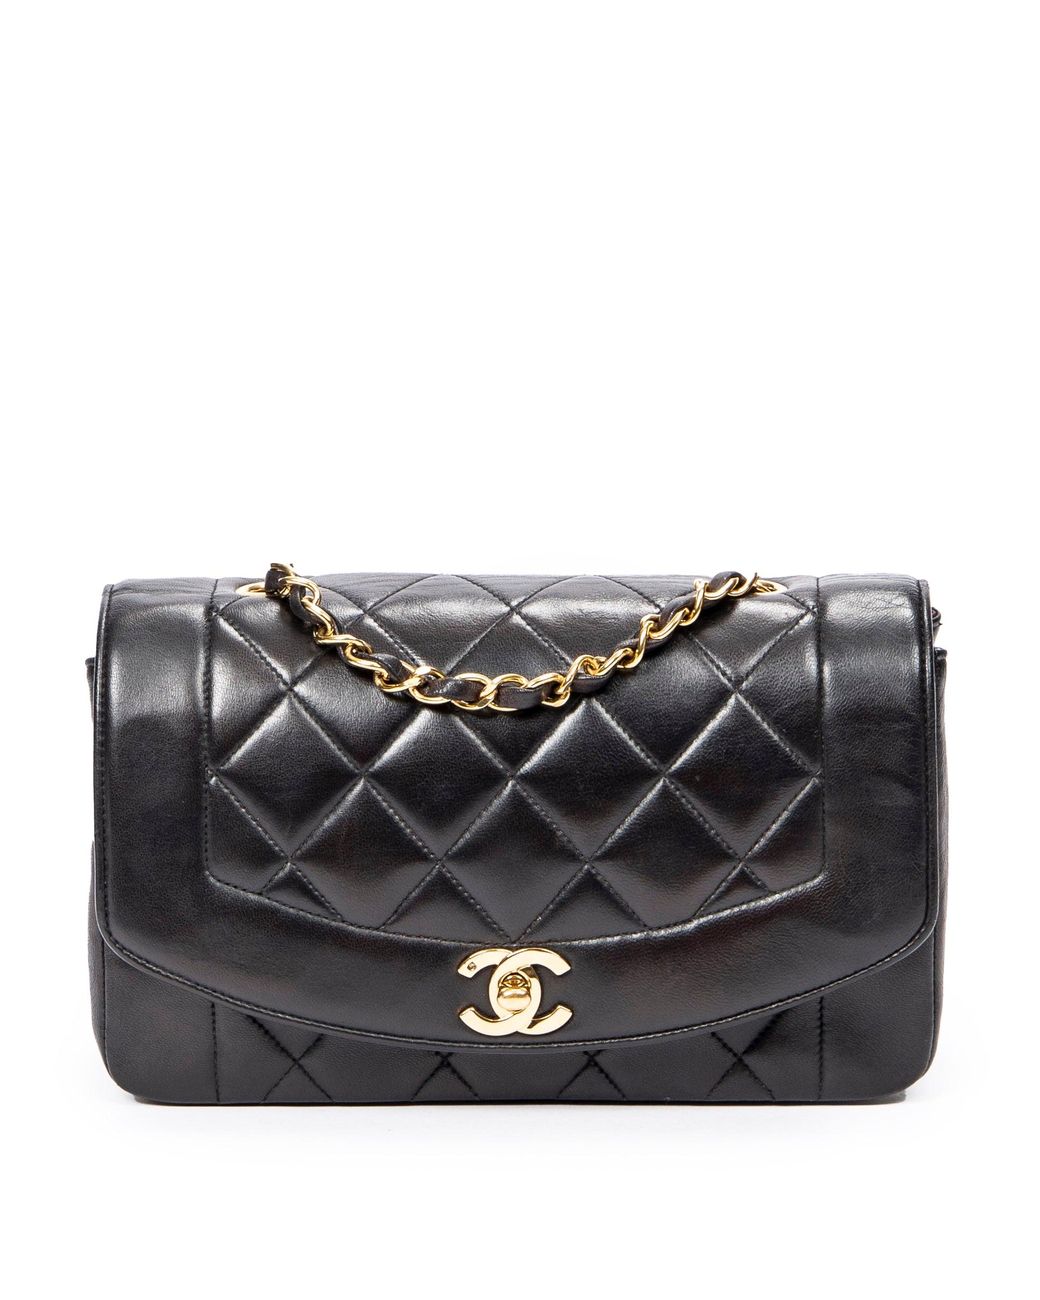 Chanel Diana Bag in Black